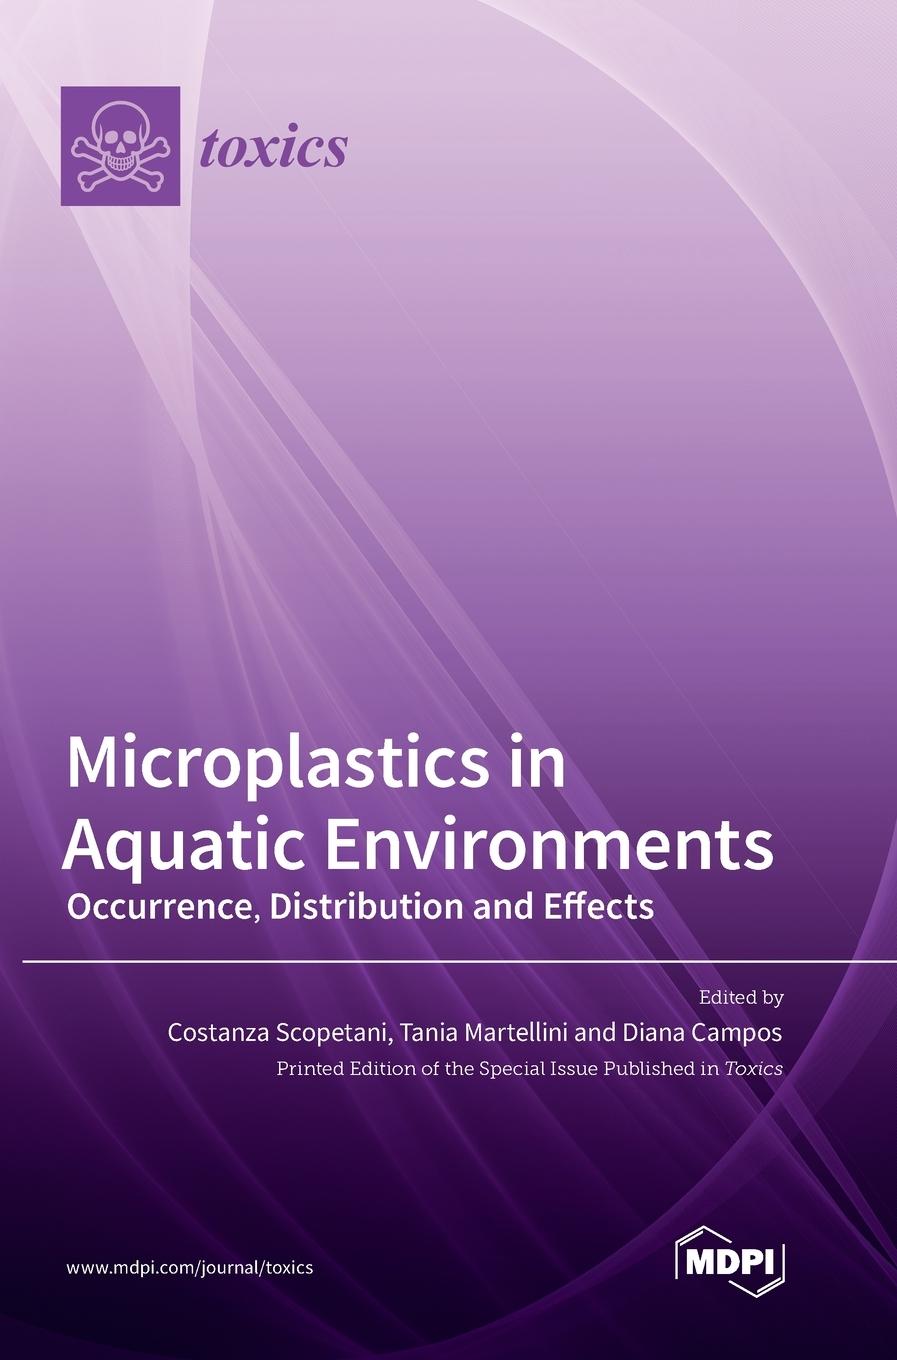 Carte Microplastics in Aquatic Environments 